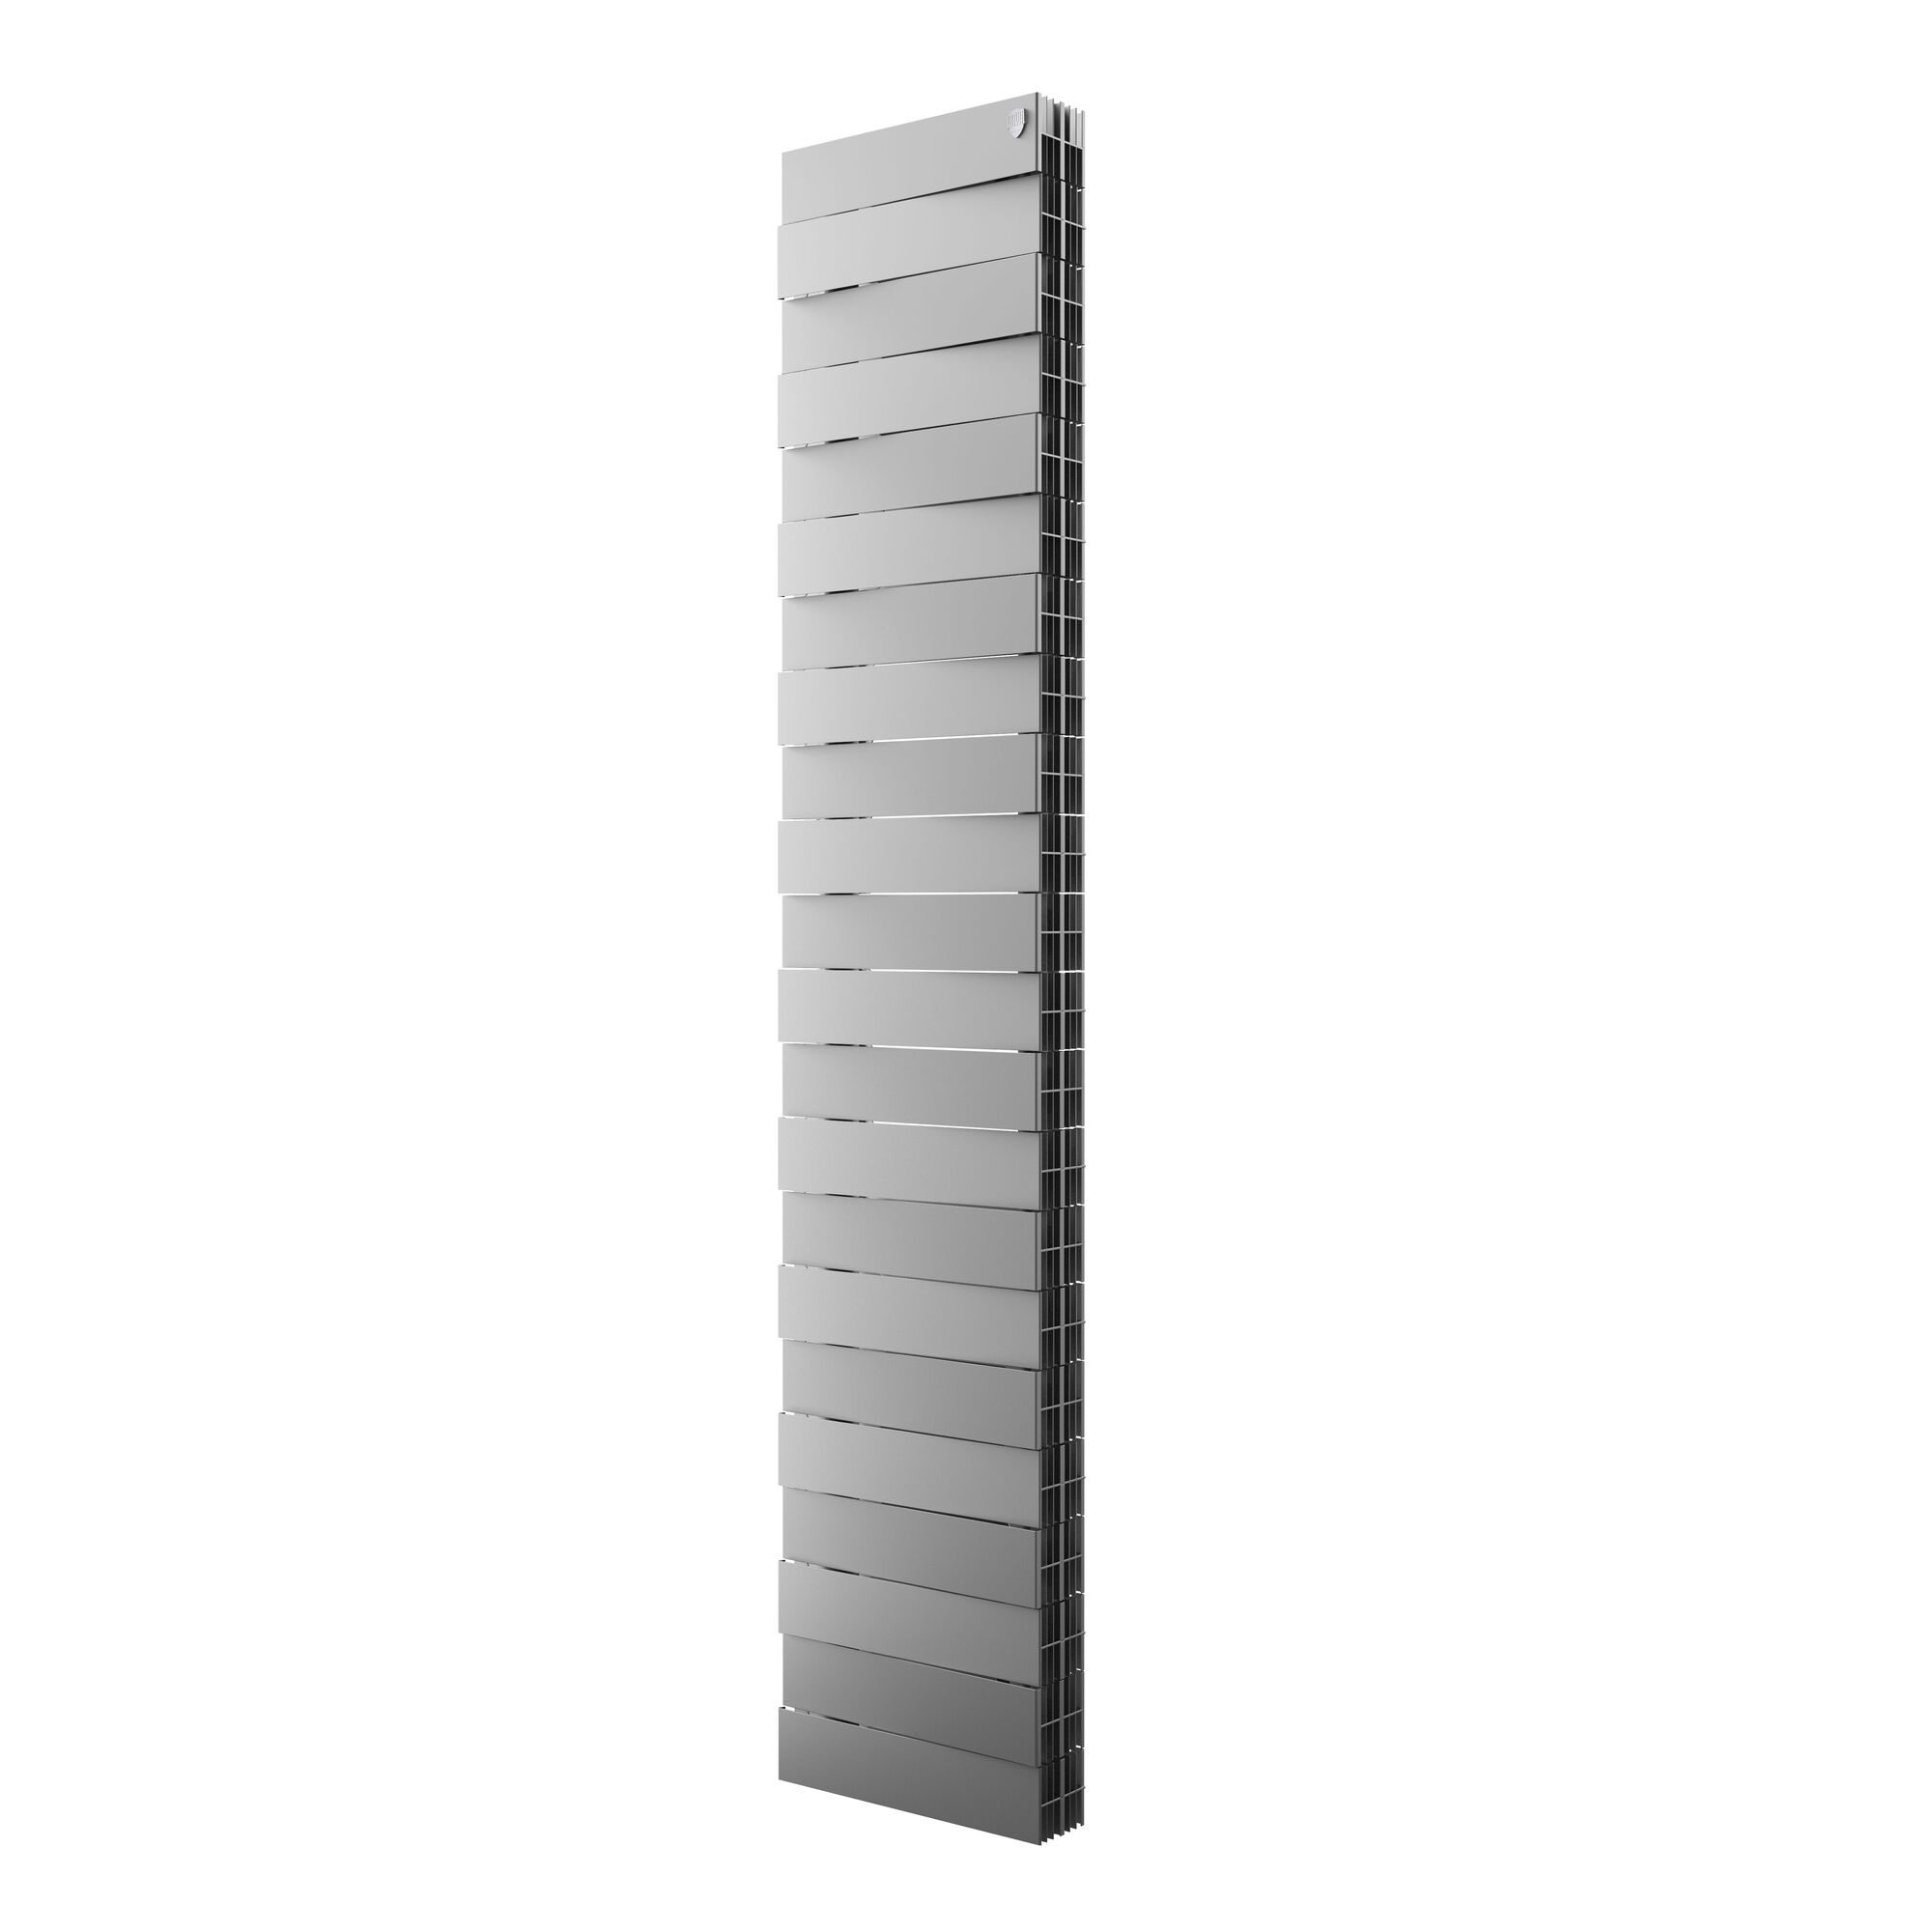 Радиатор биметаллический Royal Thermo PianoForte Tower 300, 22 секции, боковое универсальное подключение, серебристо-серый (Silver Satin)